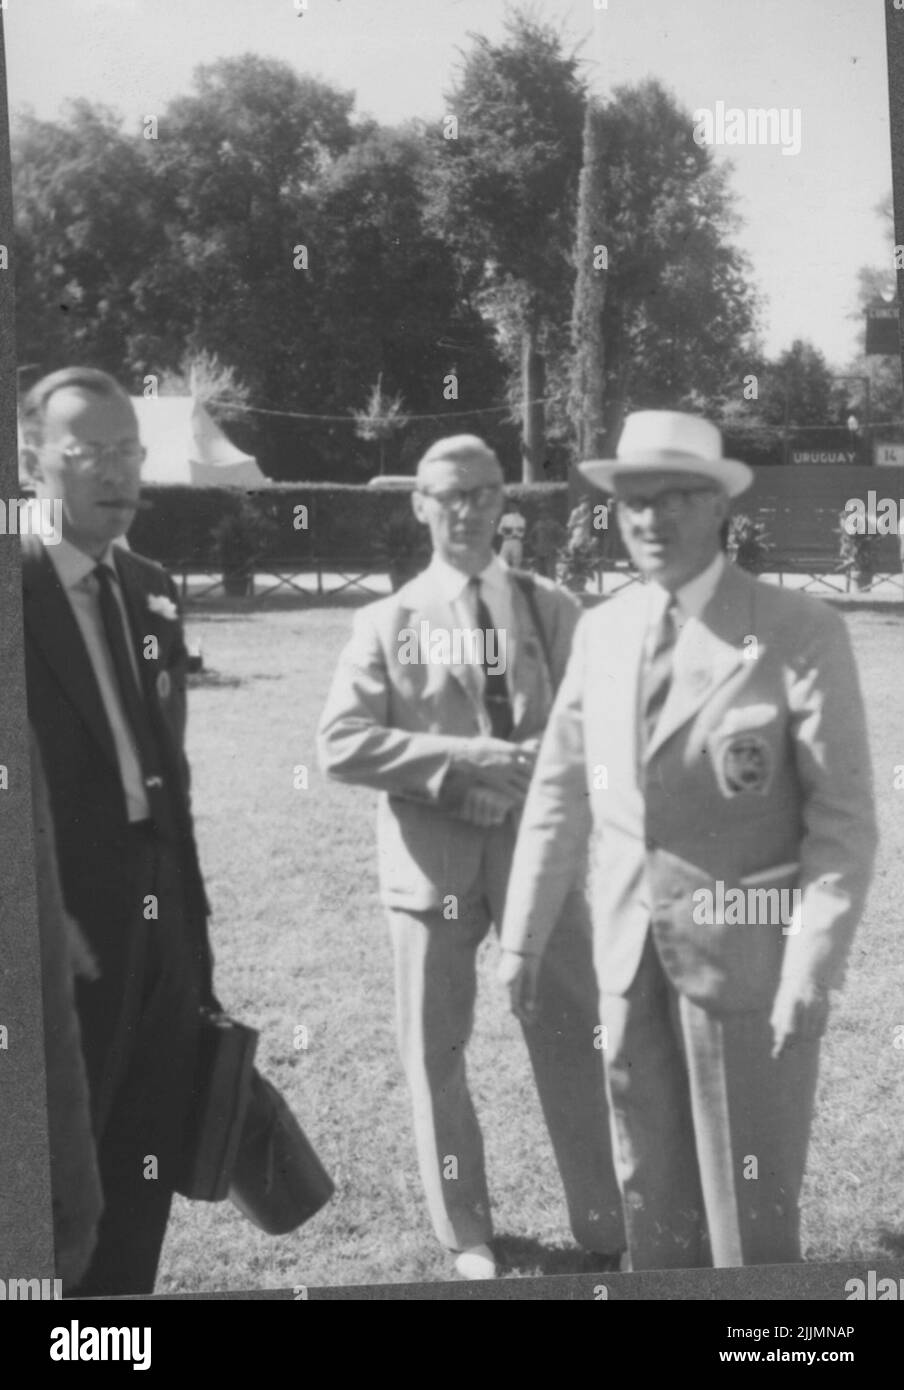 Le Olimpiadi estive a Roma 1960. Partecipanti al concorso sul campo tra cui Ewert Olausson, Life Regiment's Husars K3. Prince Behrnard e altri. Foto Stock